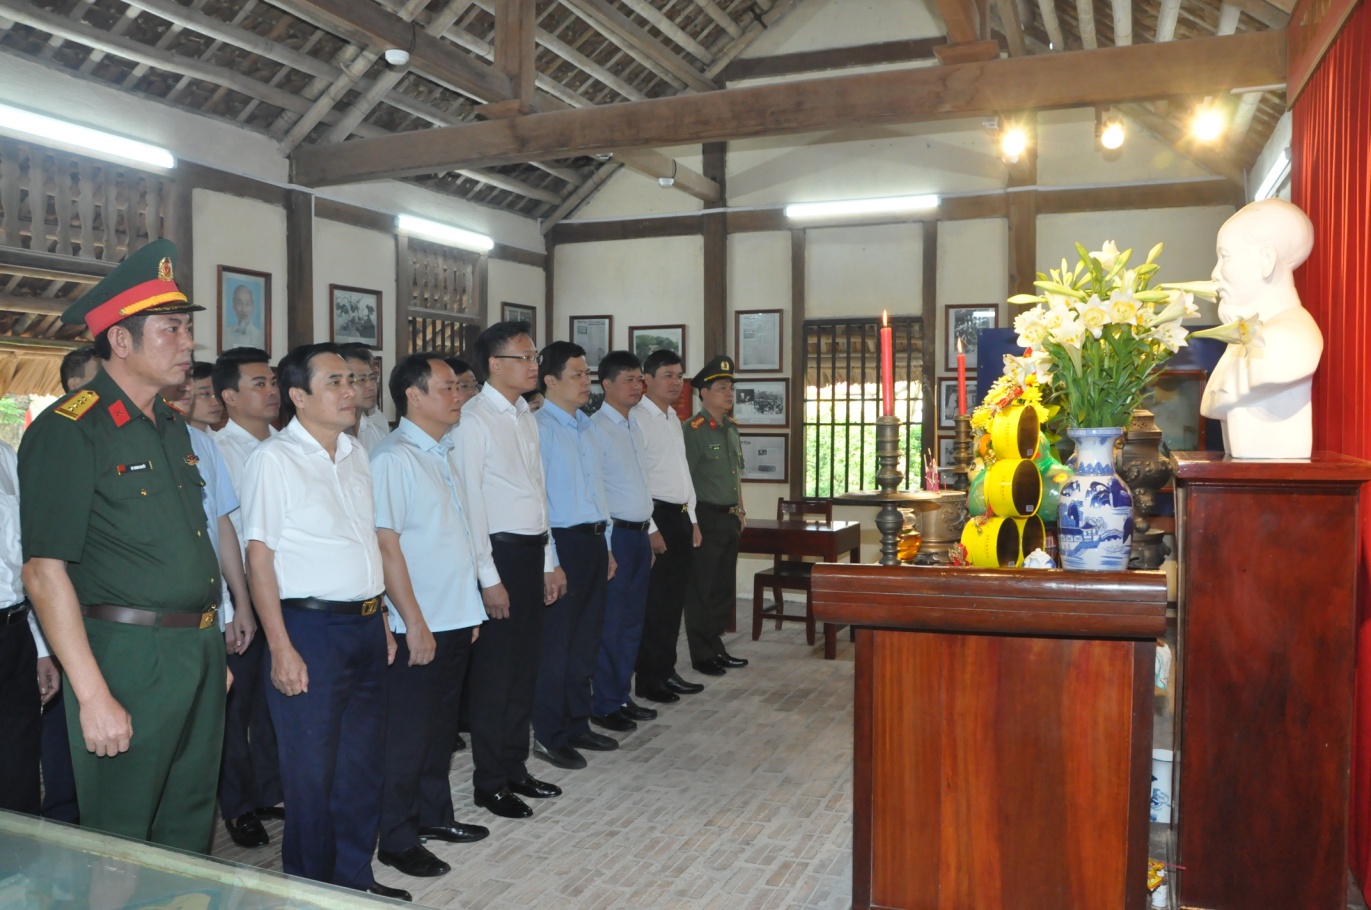 Các đồng chí lãnh đạo tỉnh và thành phố dâng hương, dâng hoa tại nhà lưu niệm Bác Hồ, tượng đài Tổng Bí thư Nguyễn Văn Linh và đài tưởng niệm các anh hùng Liệt sỹ tỉnh